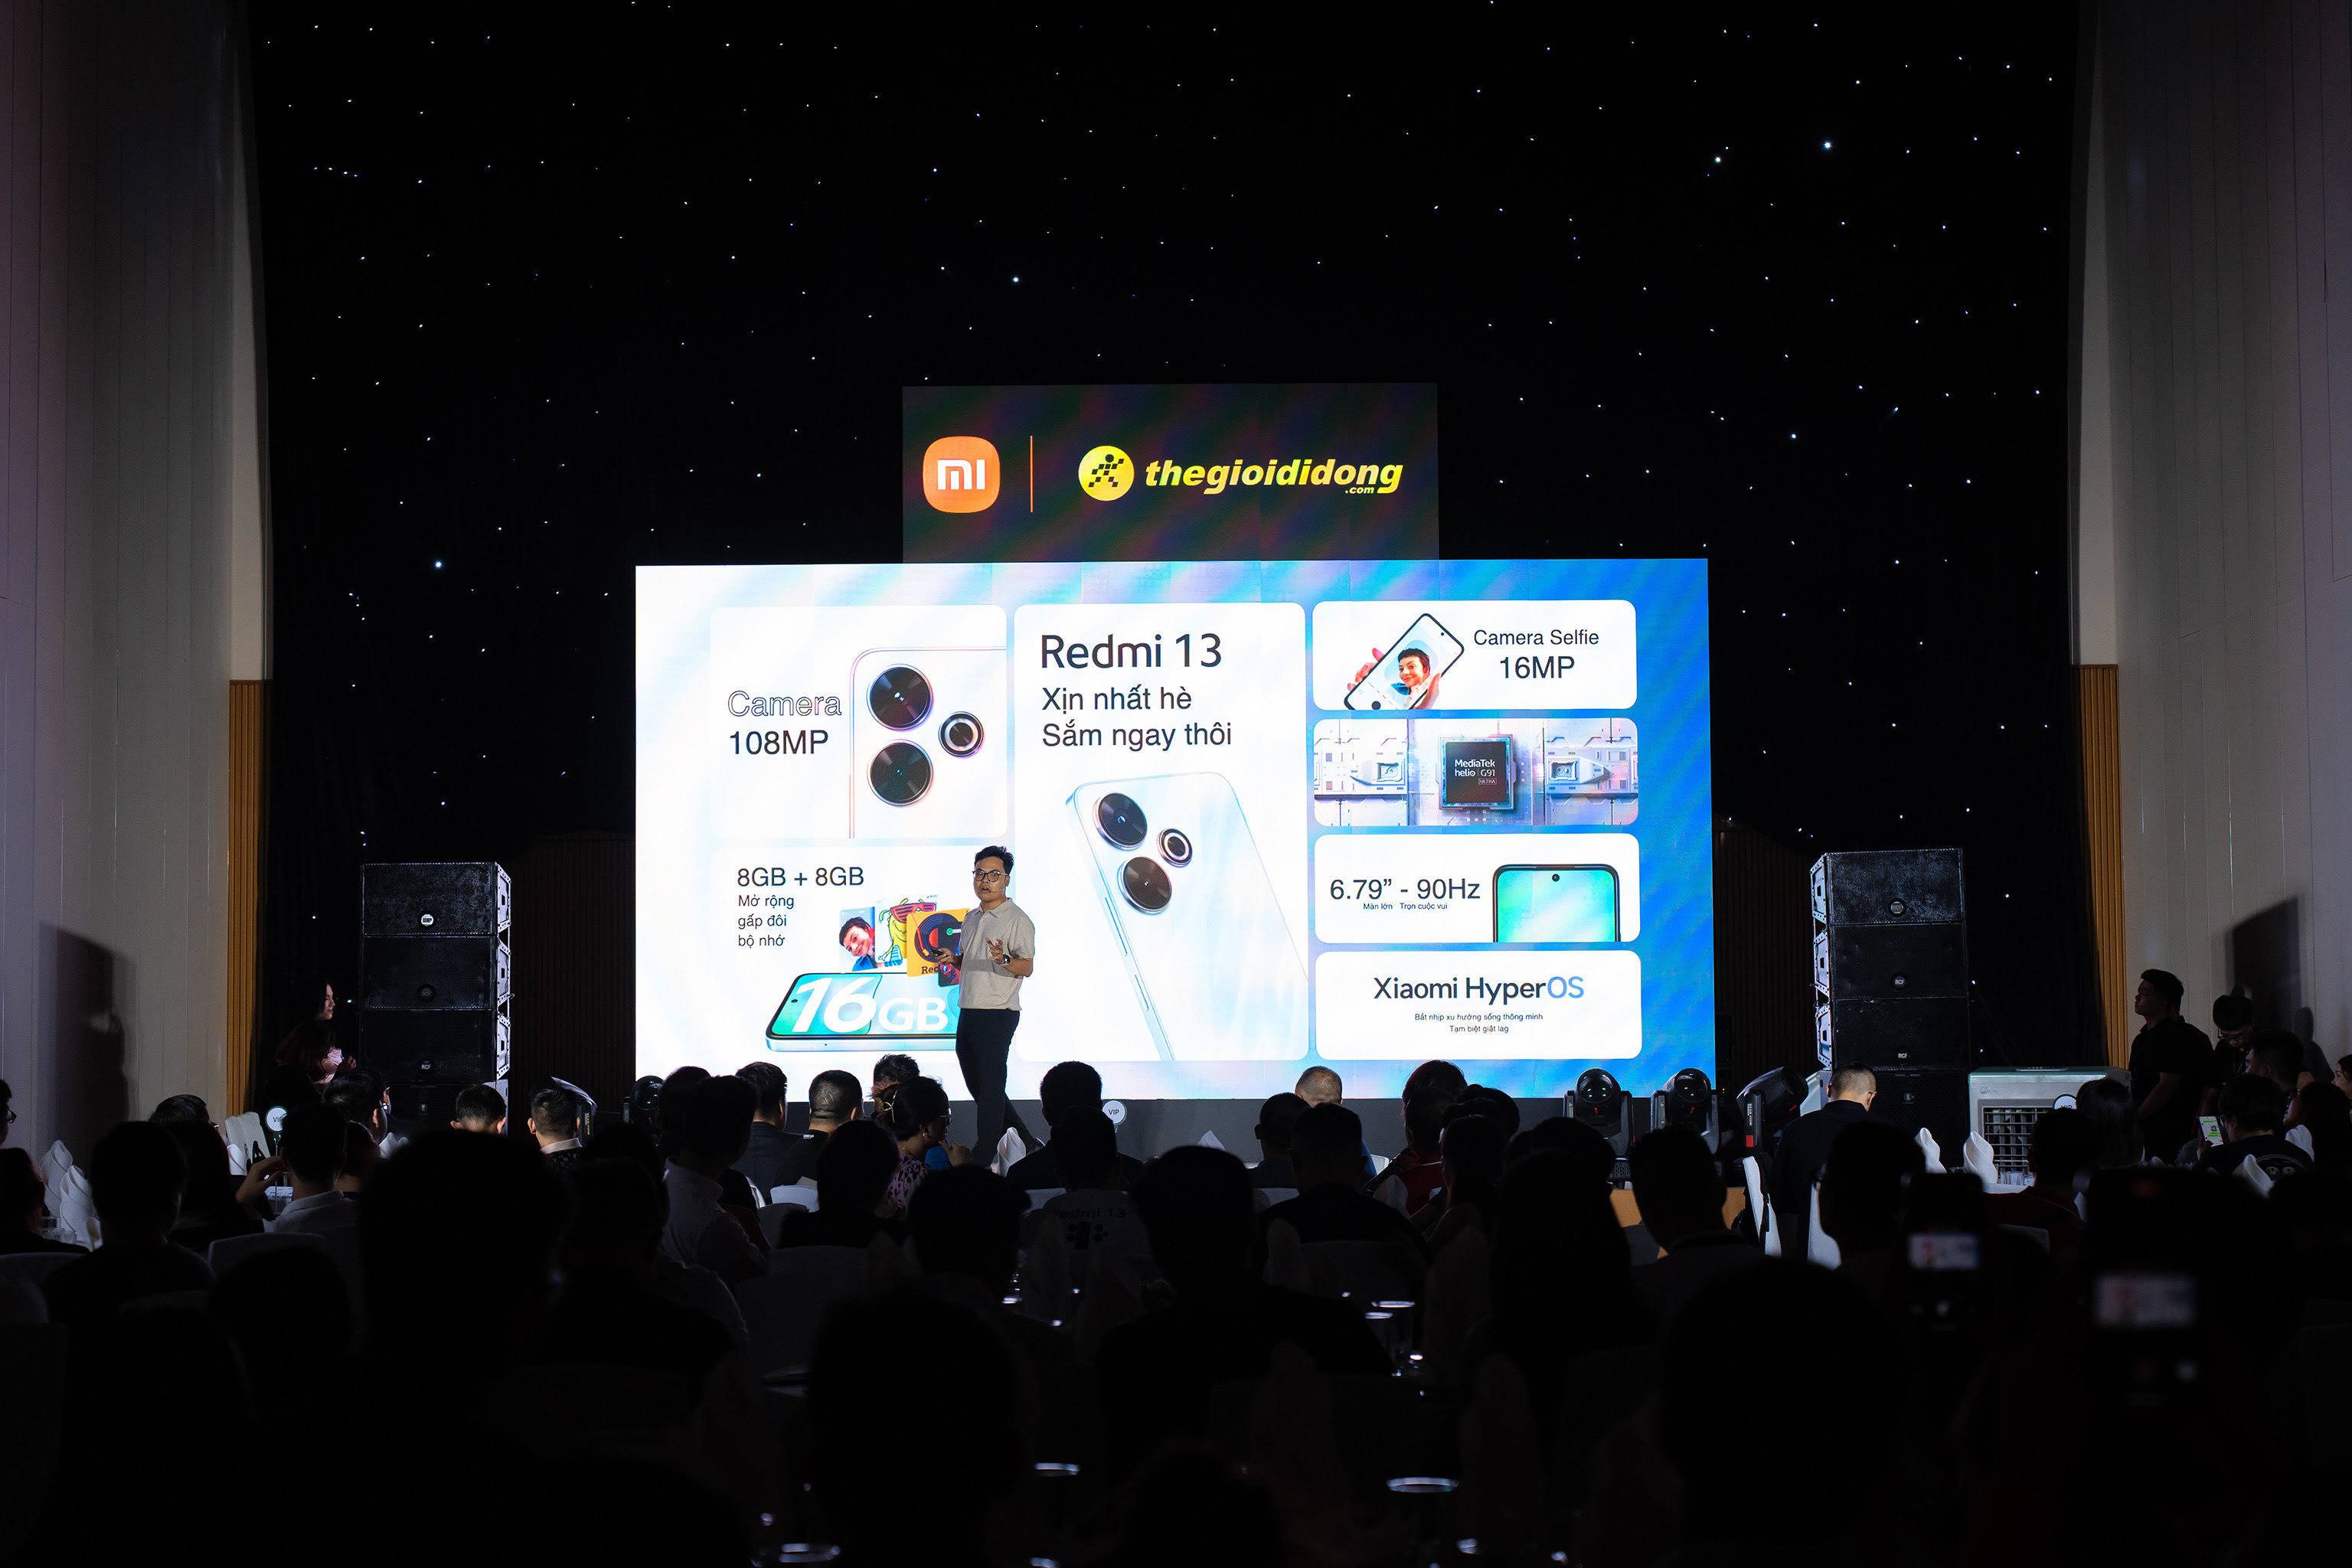 Lễ phát động bán hàng Redmi 13 ngày 13/6 là một sự kiện rất quan trọng, đánh dấu mạnh mẽ cho sự hợp tác chặt chẽ của Thế Giới Di Động và Xiaomi trong suốt nhiều năm qua